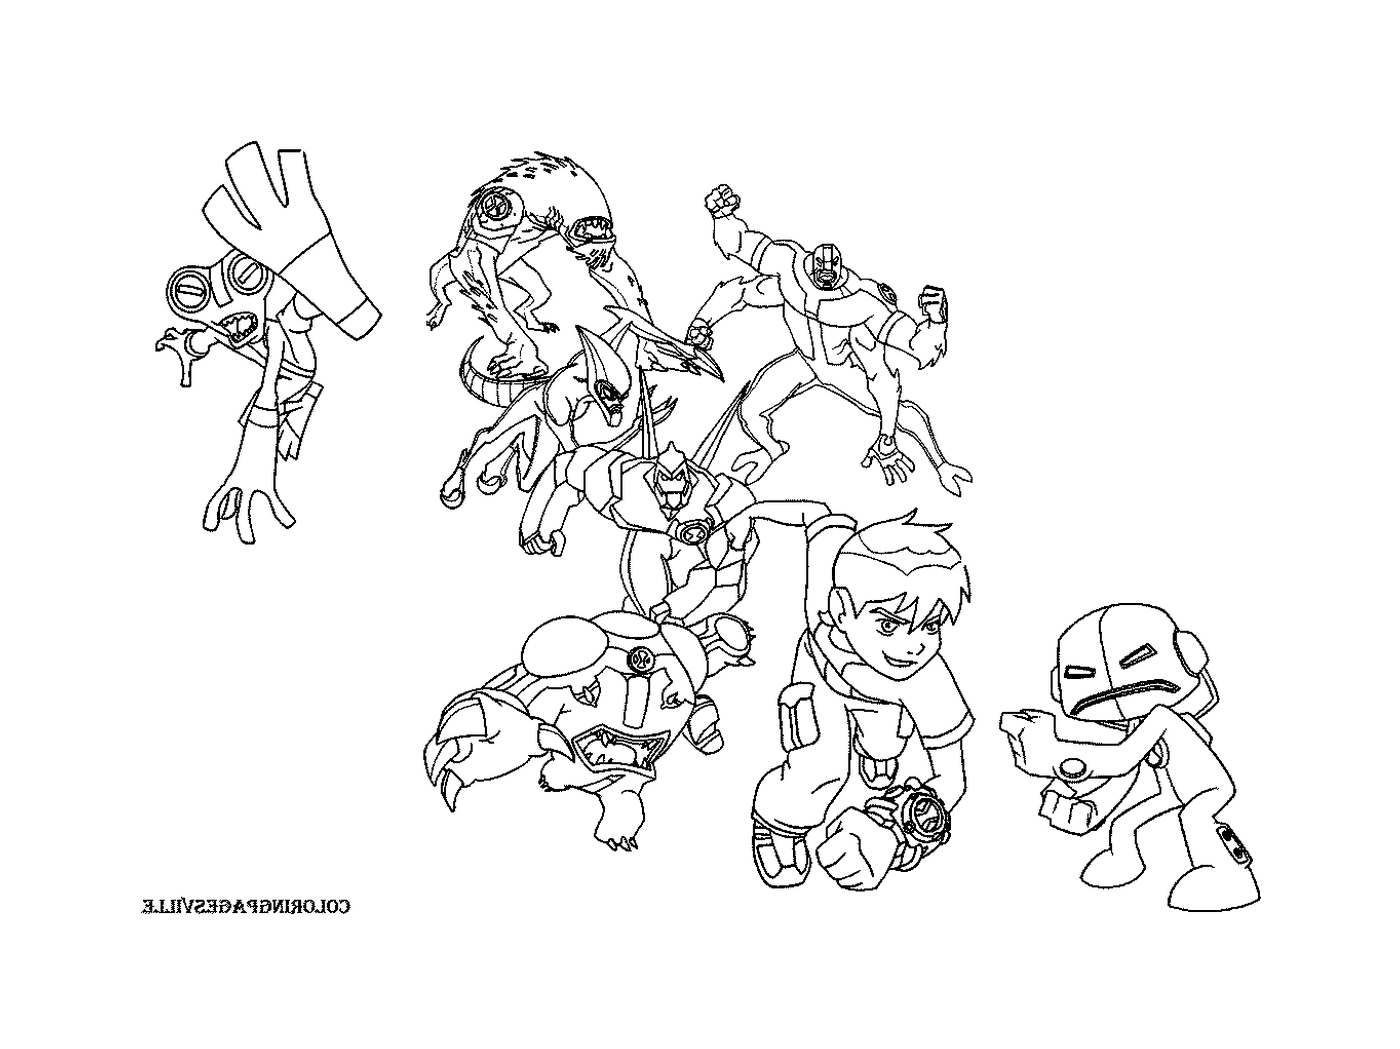  Un grupo de personajes de dibujos animados juntos 